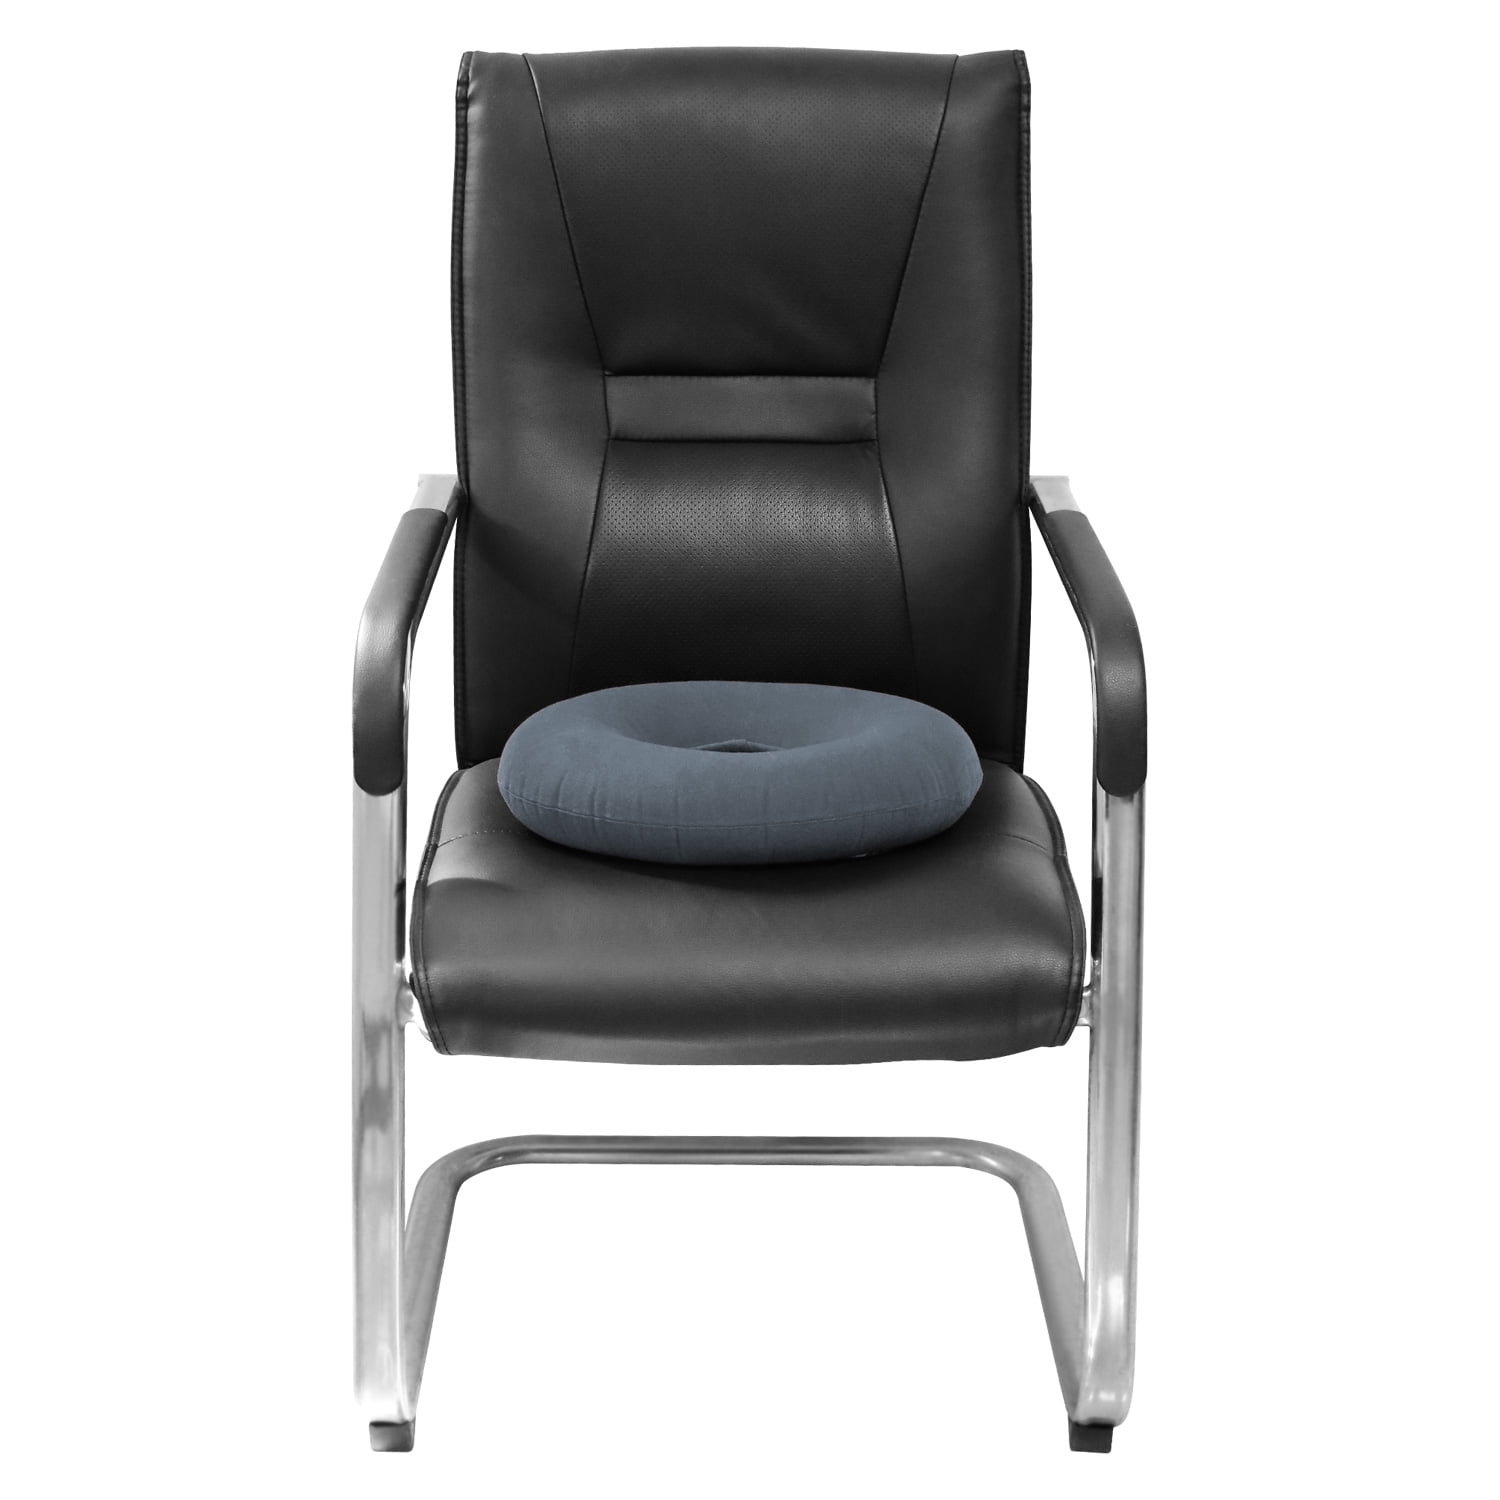 HATHWAY Seat Cushion, Office Chair Cushion, Butt Cushion for Office Chair,  Double-Sided Plush Available Chair Cushion, High Elastic PP Cotton Filled